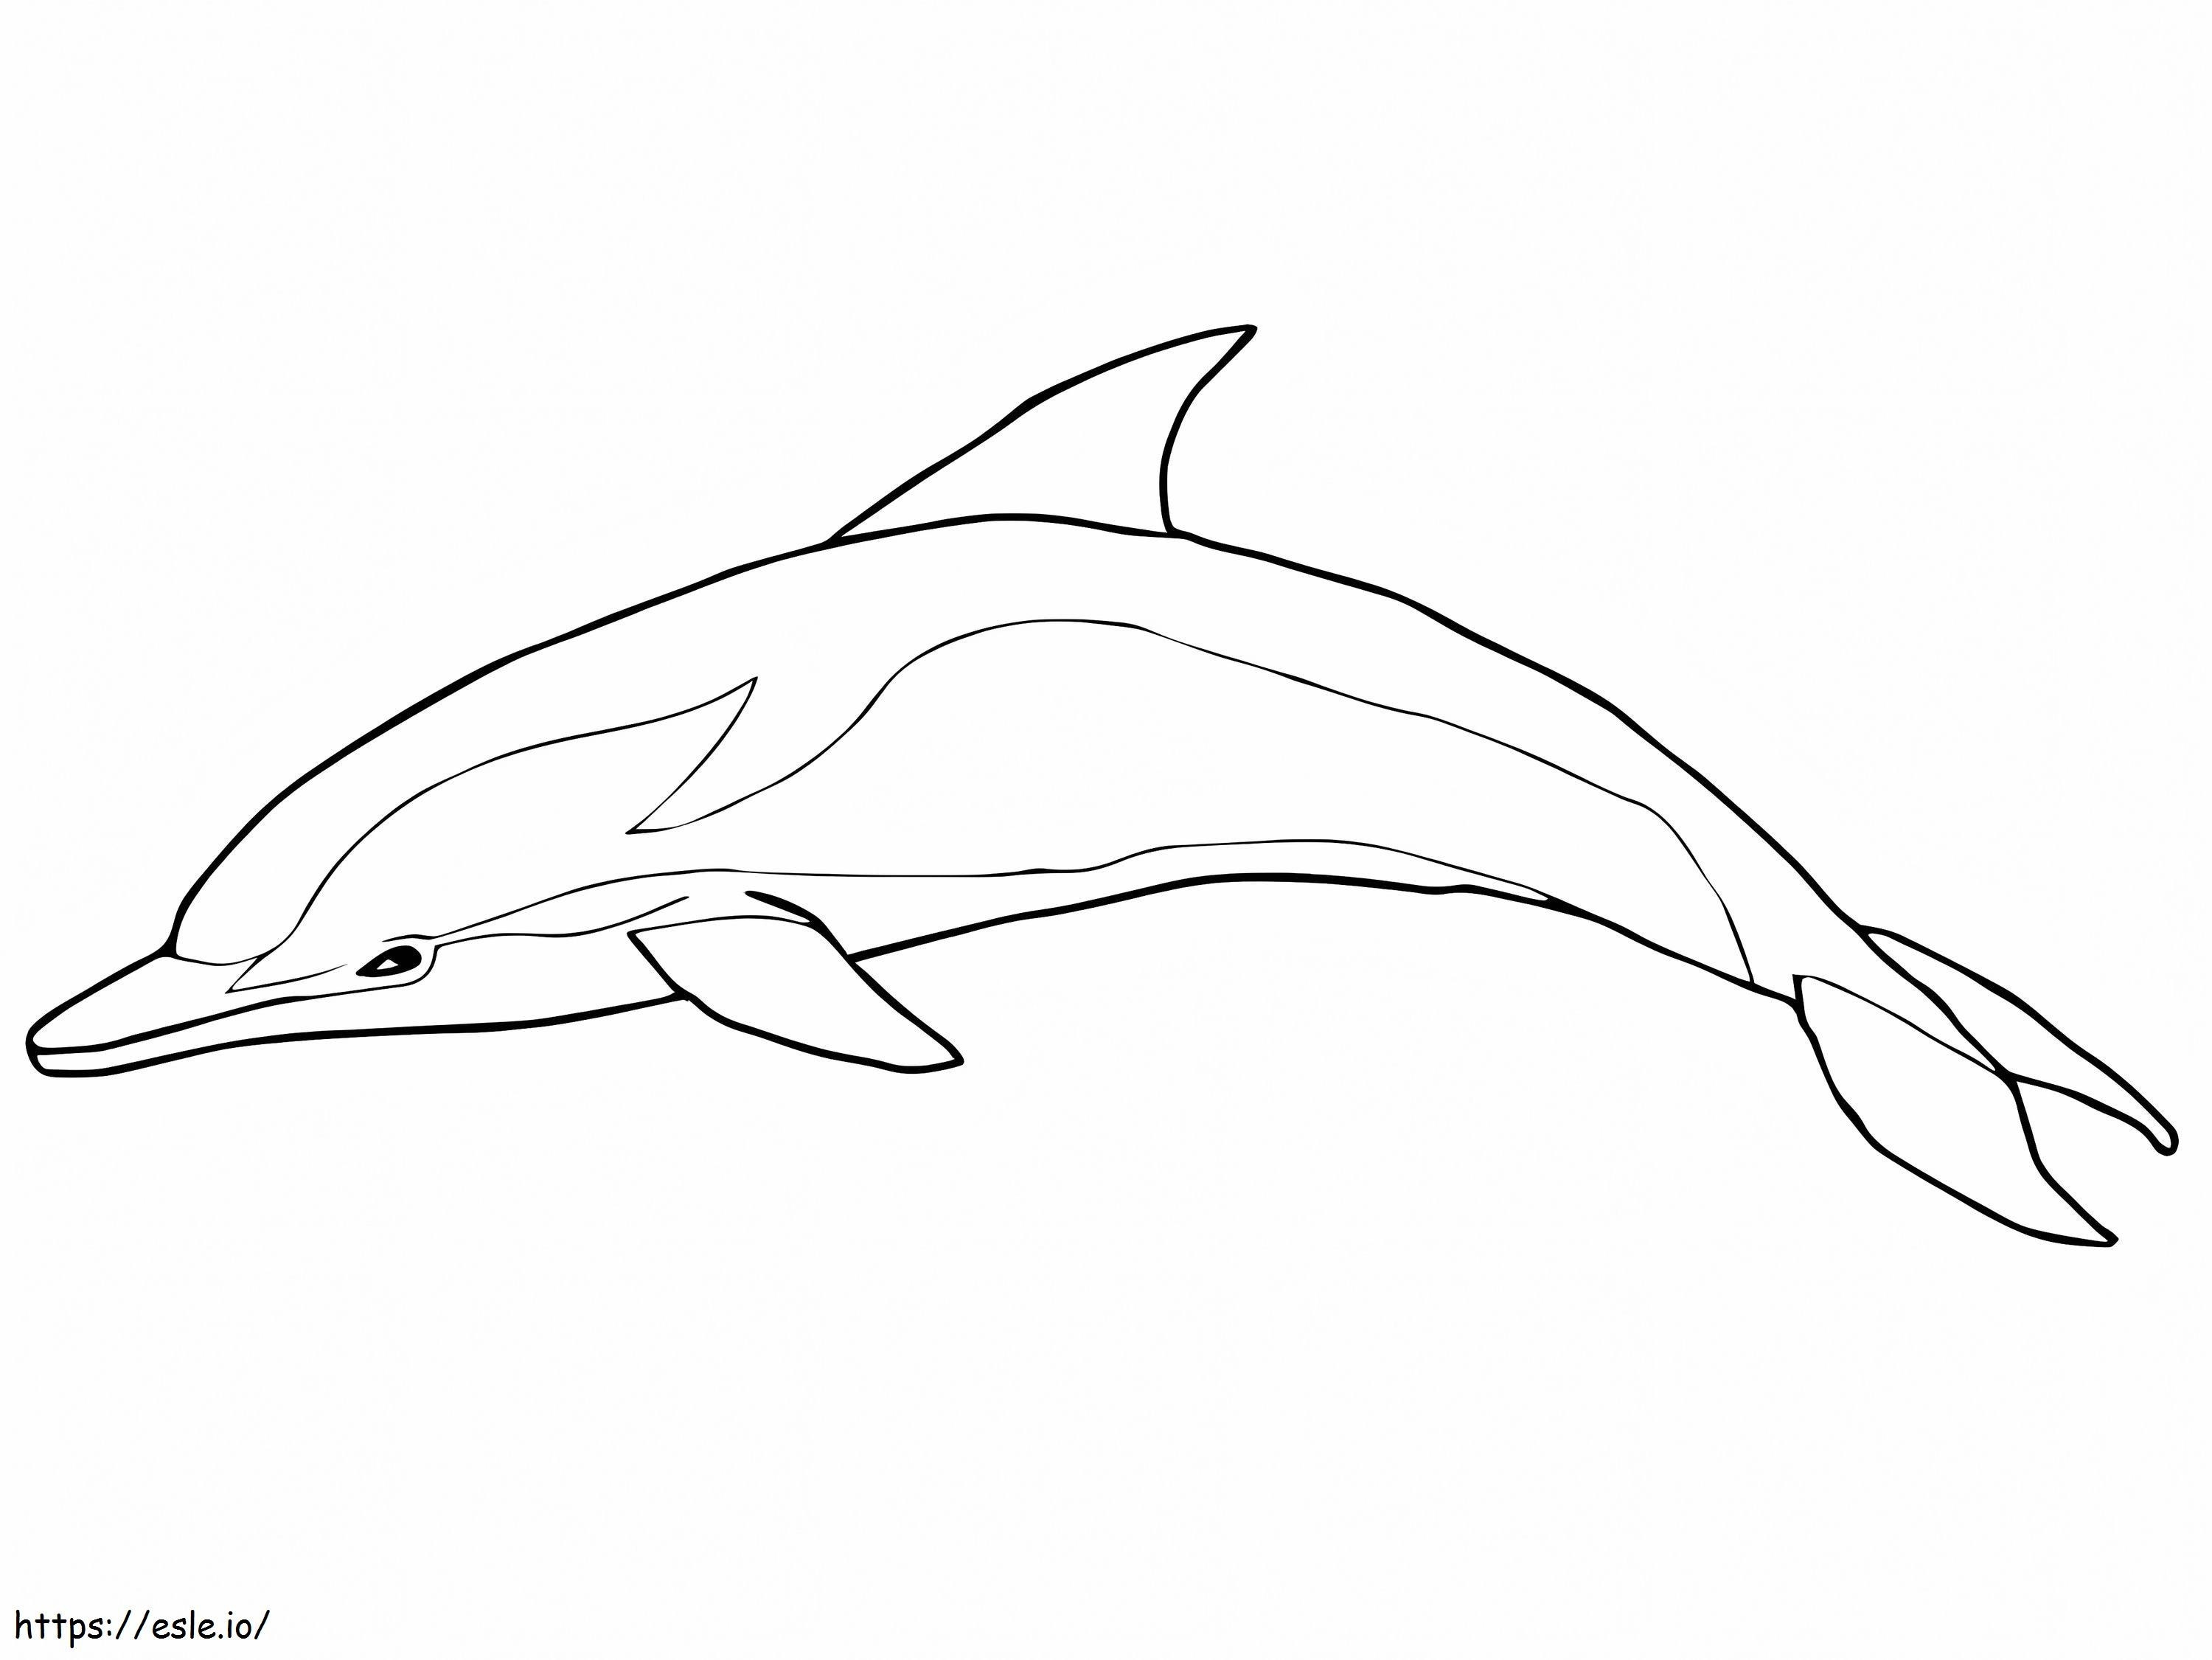 Delfin Albastru și Alb de colorat